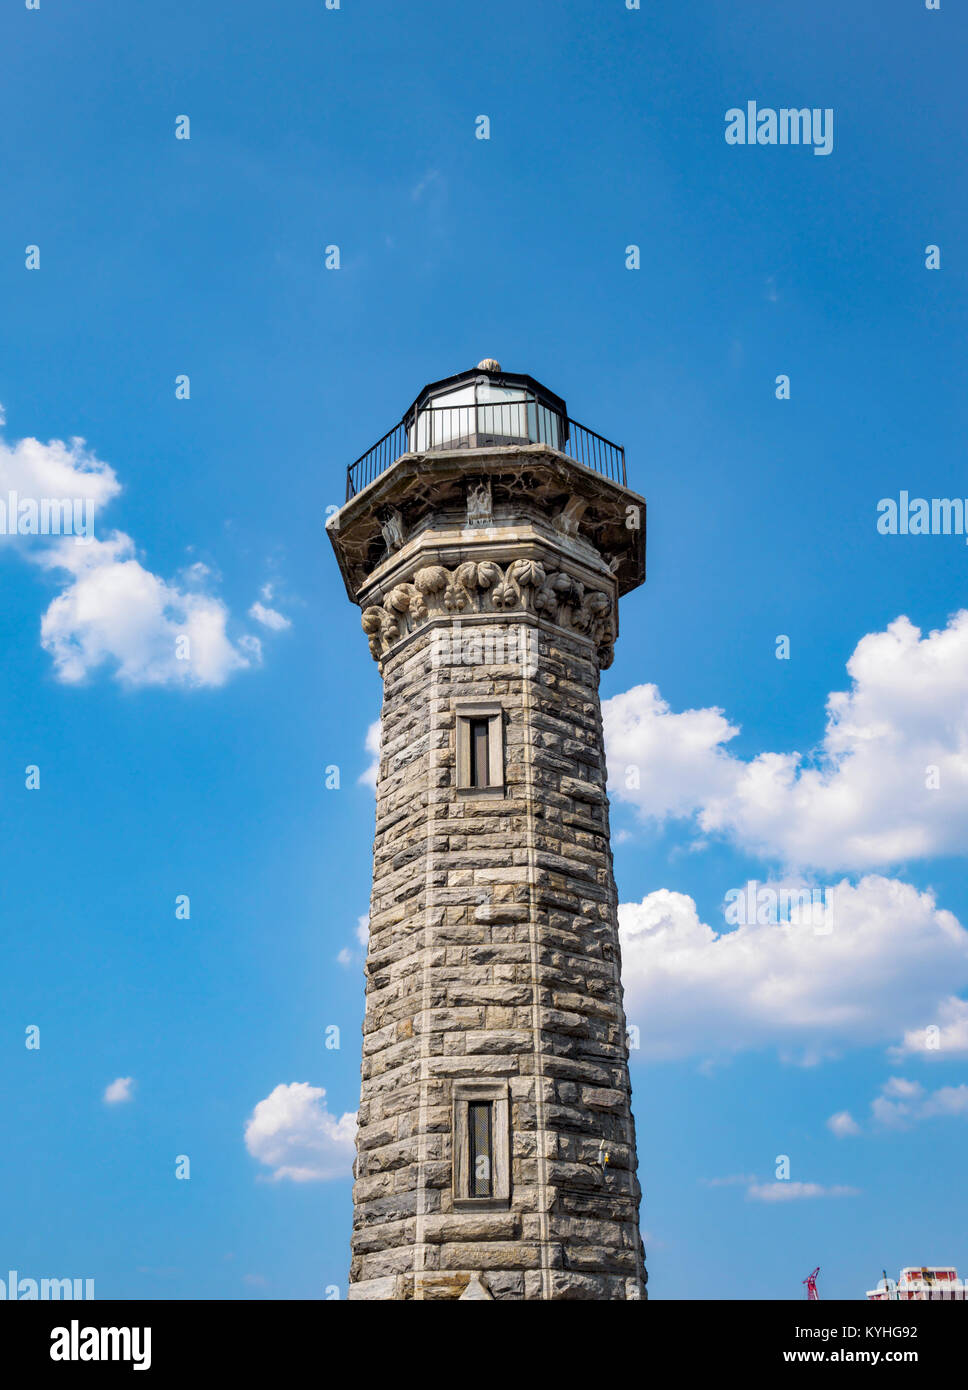 Roosevelt Island Lighthouse, New York, NY. Es gibt mehrere Bilder dieser Gotischen Stil achteckiger Stein Licht Haus und ich will mehr hochladen. Stockfoto